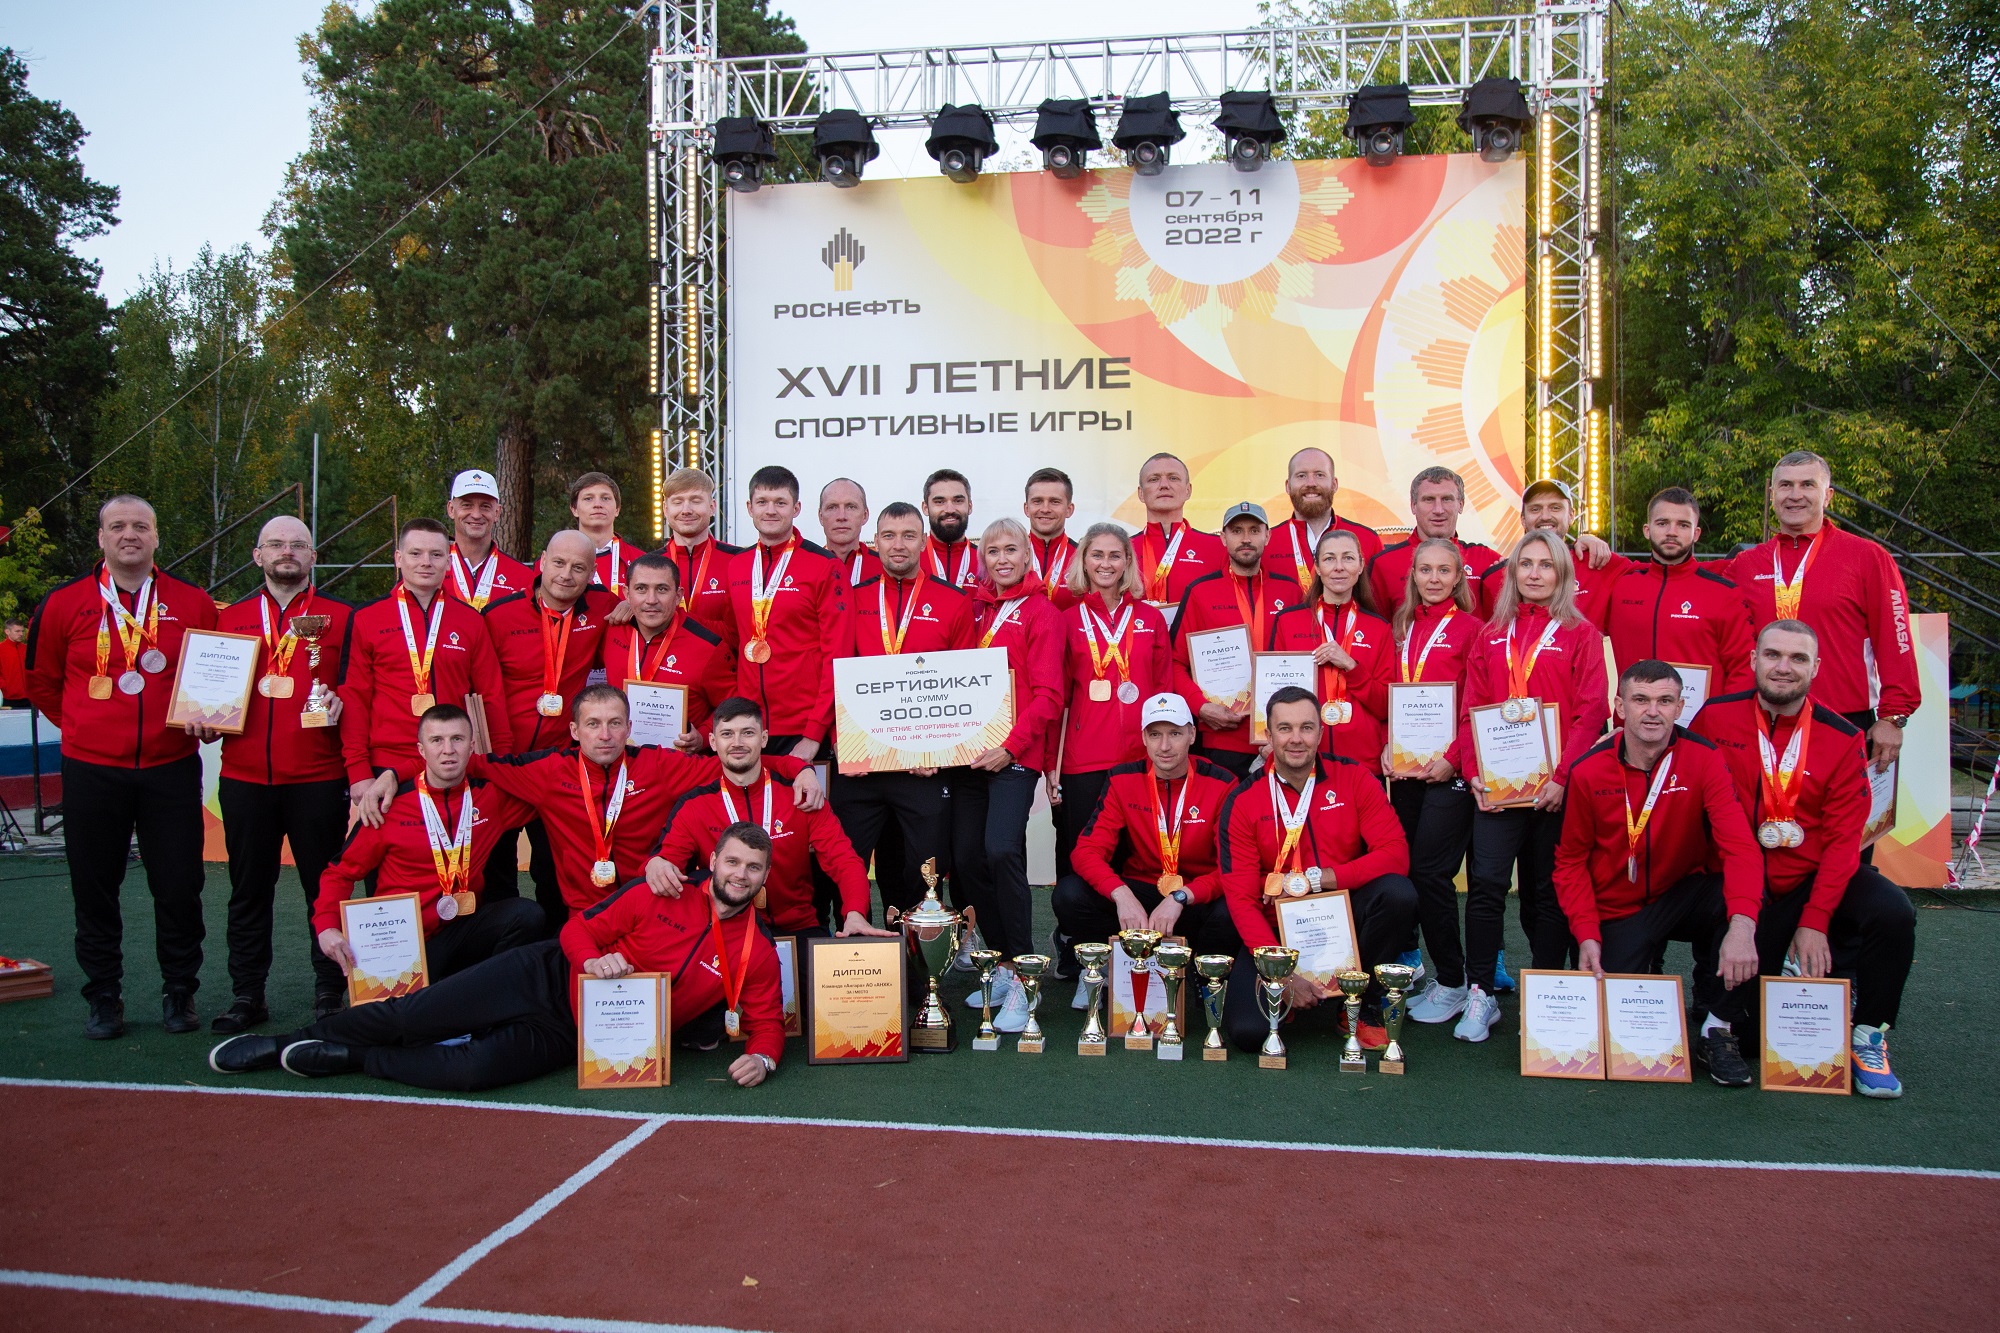 Команда Ангарской нефтехимической компании стала чемпионом XVII Летних спортивных игр «Роснефти»